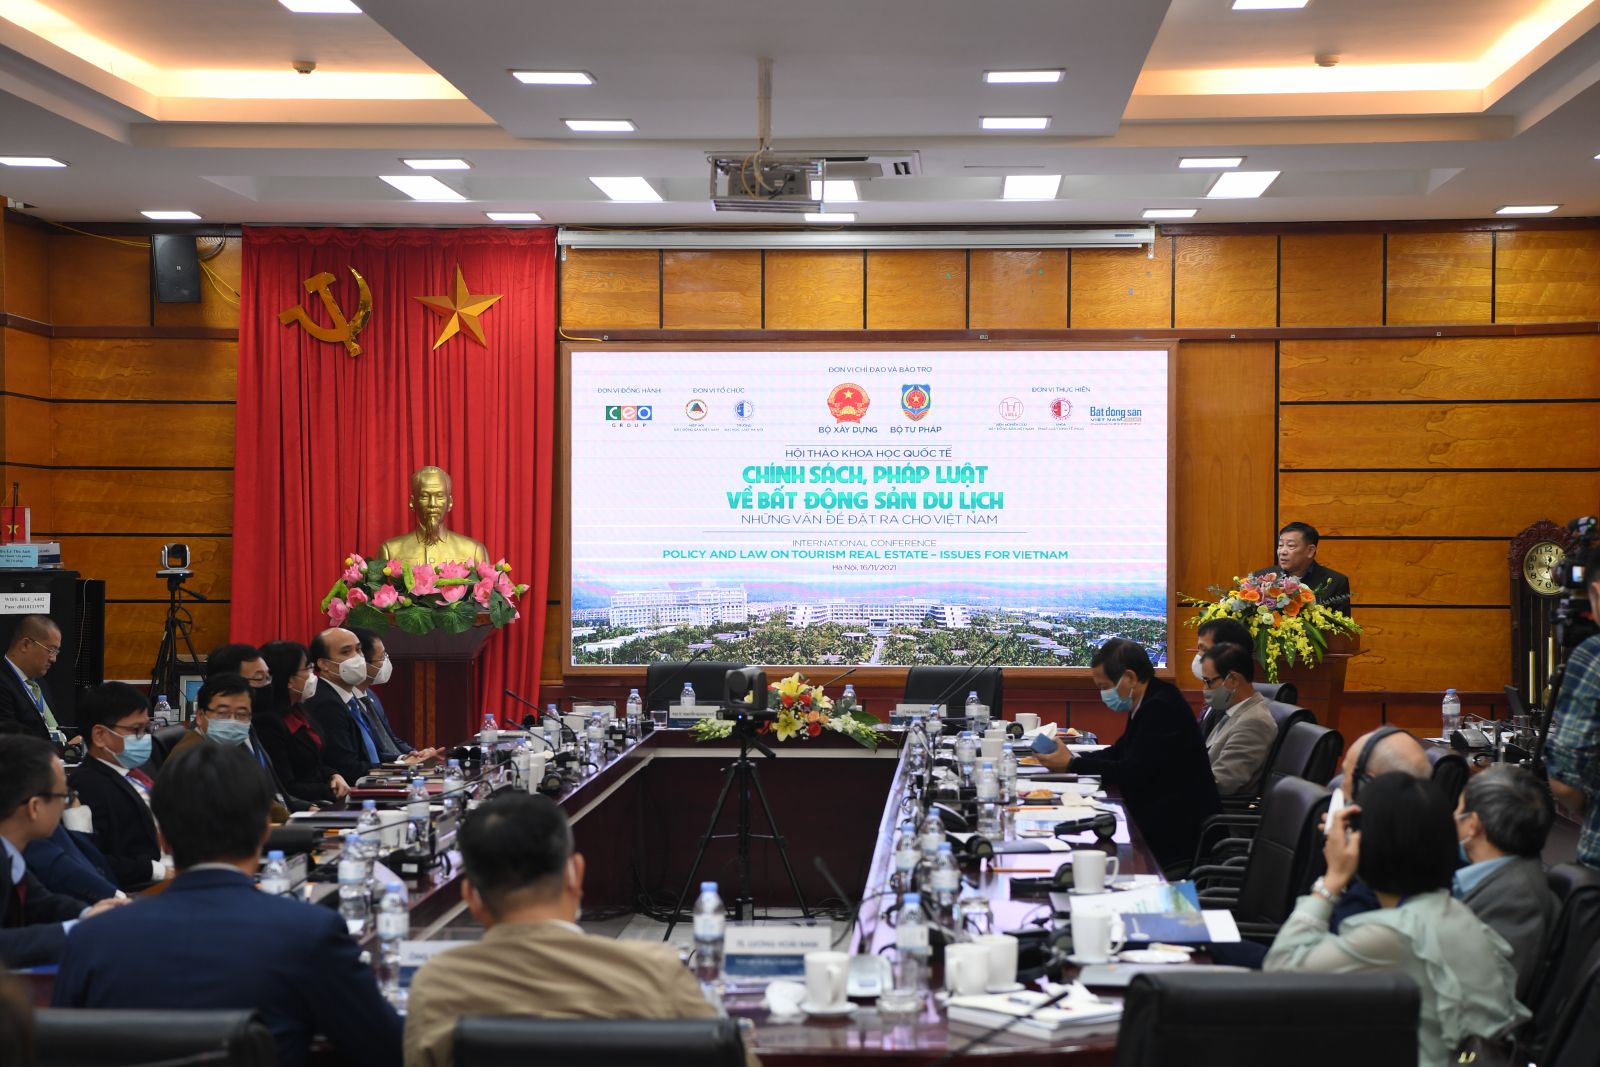 Hội thảo khoa học quốc tế với chủ đề: “Chính sách, pháp luật về bất động sản du lịch – Những vấn đề đặt ra cho Việt Nam”. 